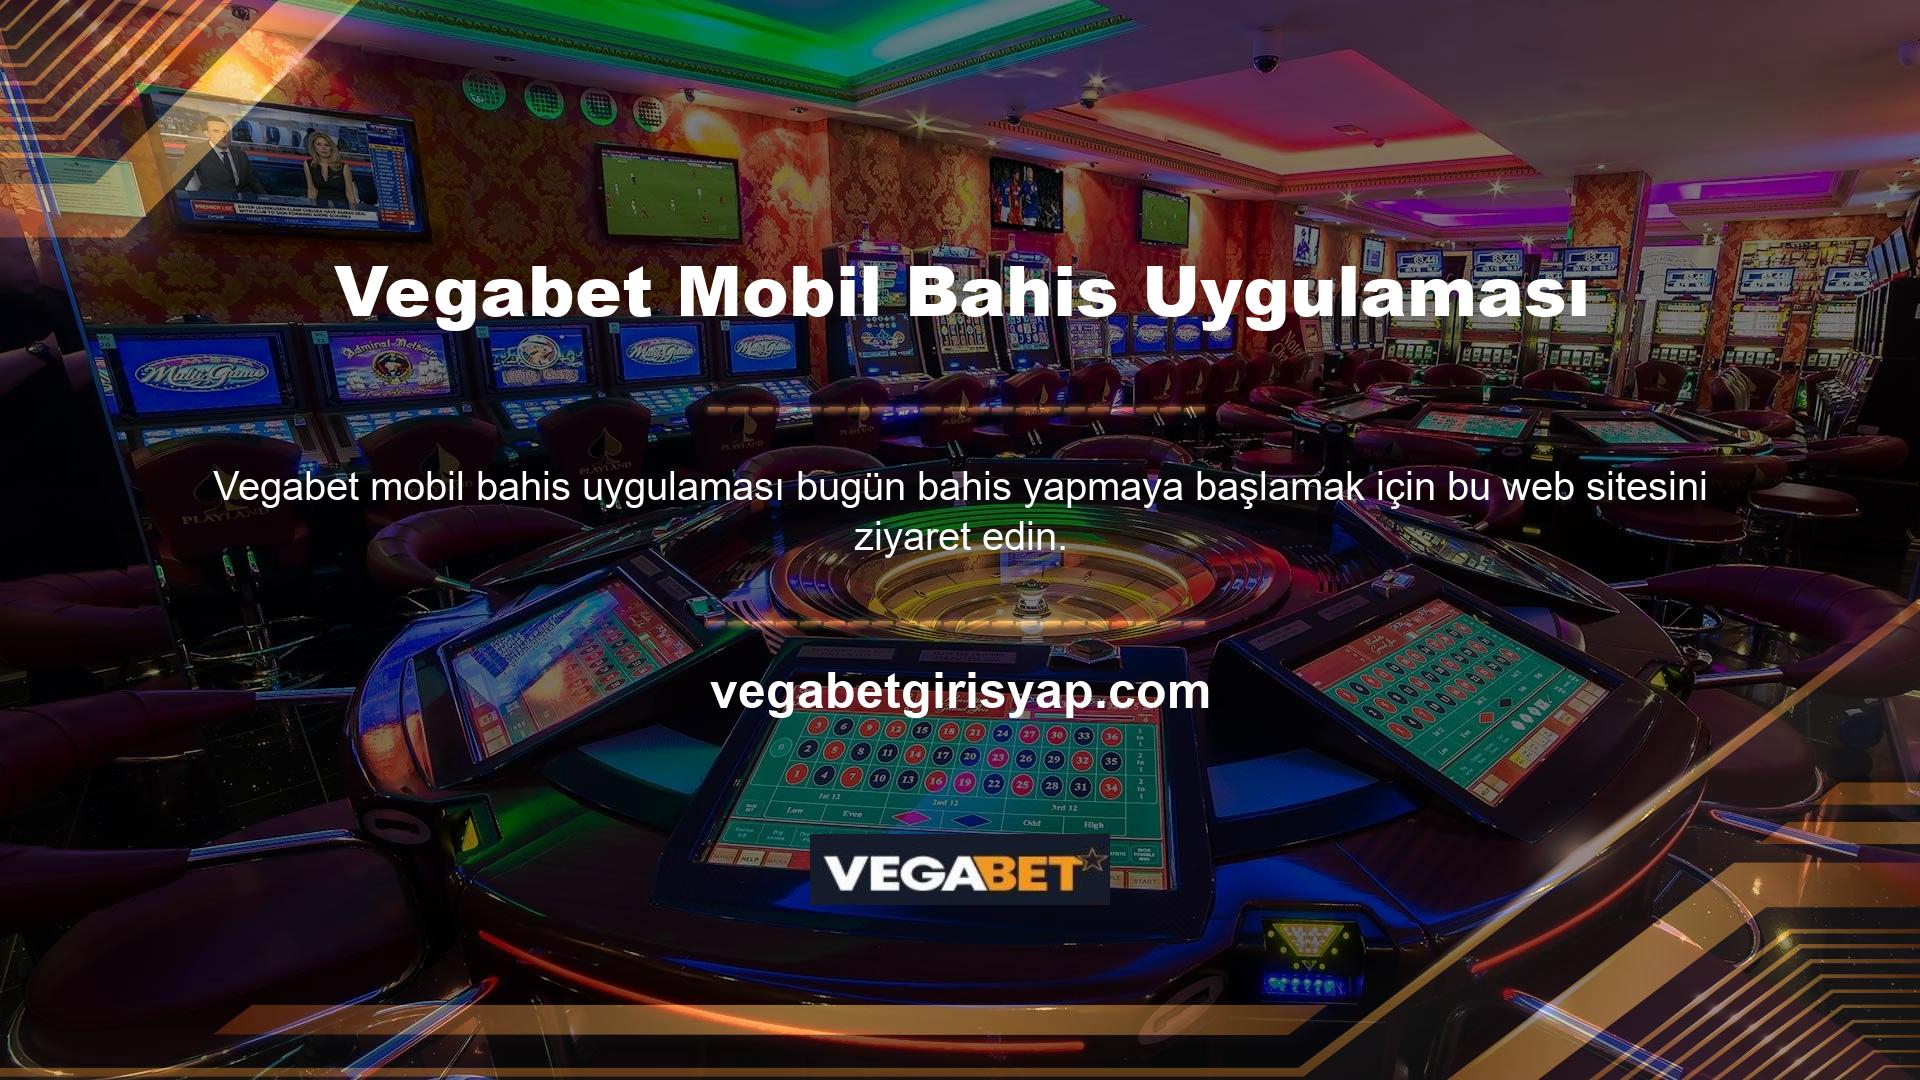 Vegabet bonus yönü müşterilerinin memnuniyetini sağlamak için tasarlanmıştır